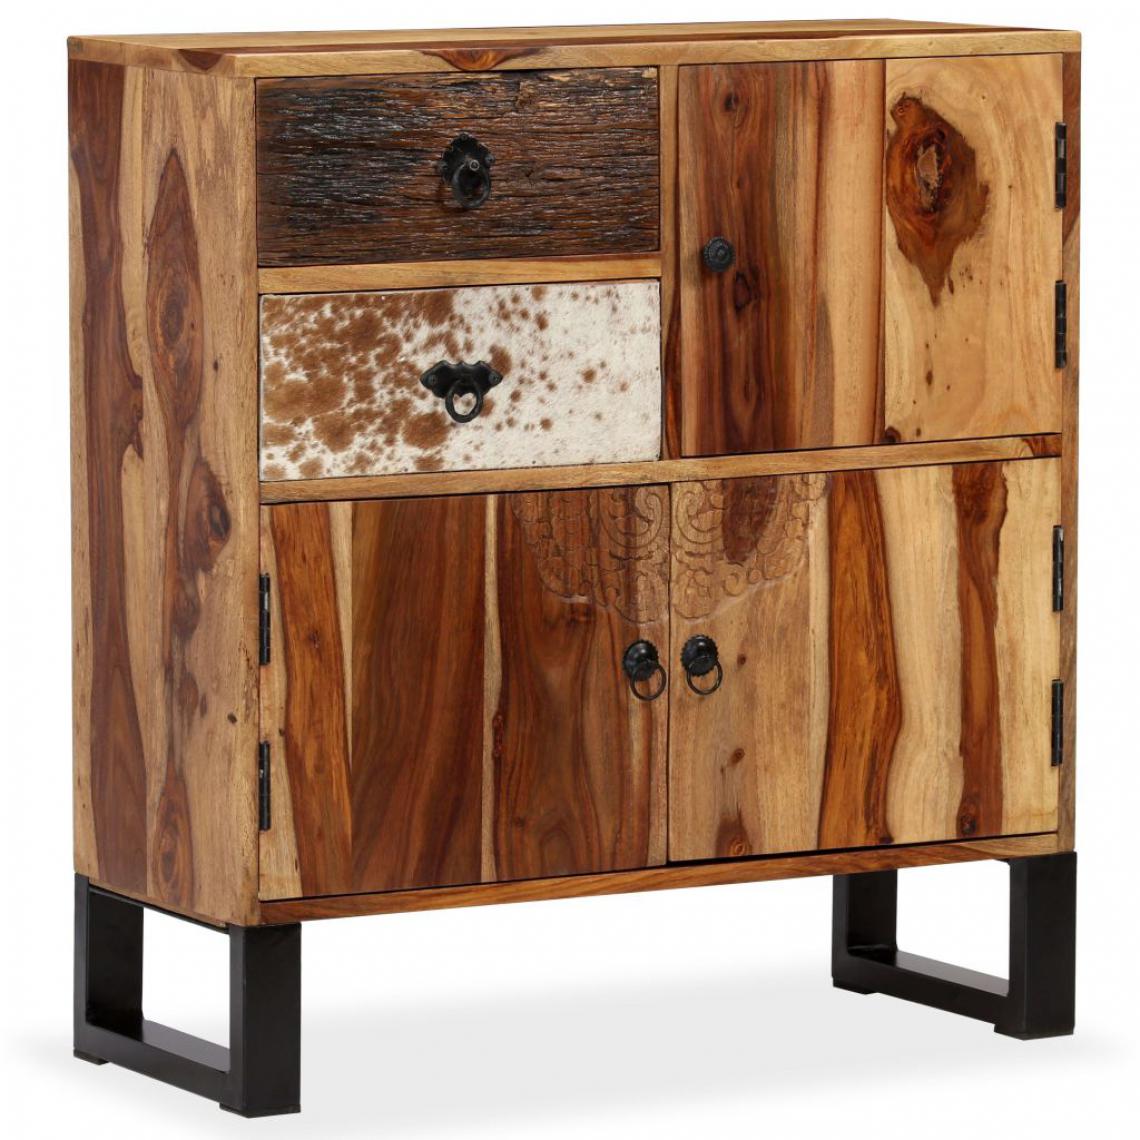 Helloshop26 - Buffet bahut armoire console meuble de rangement bois massif de sesham 80 cm 4402028 - Consoles